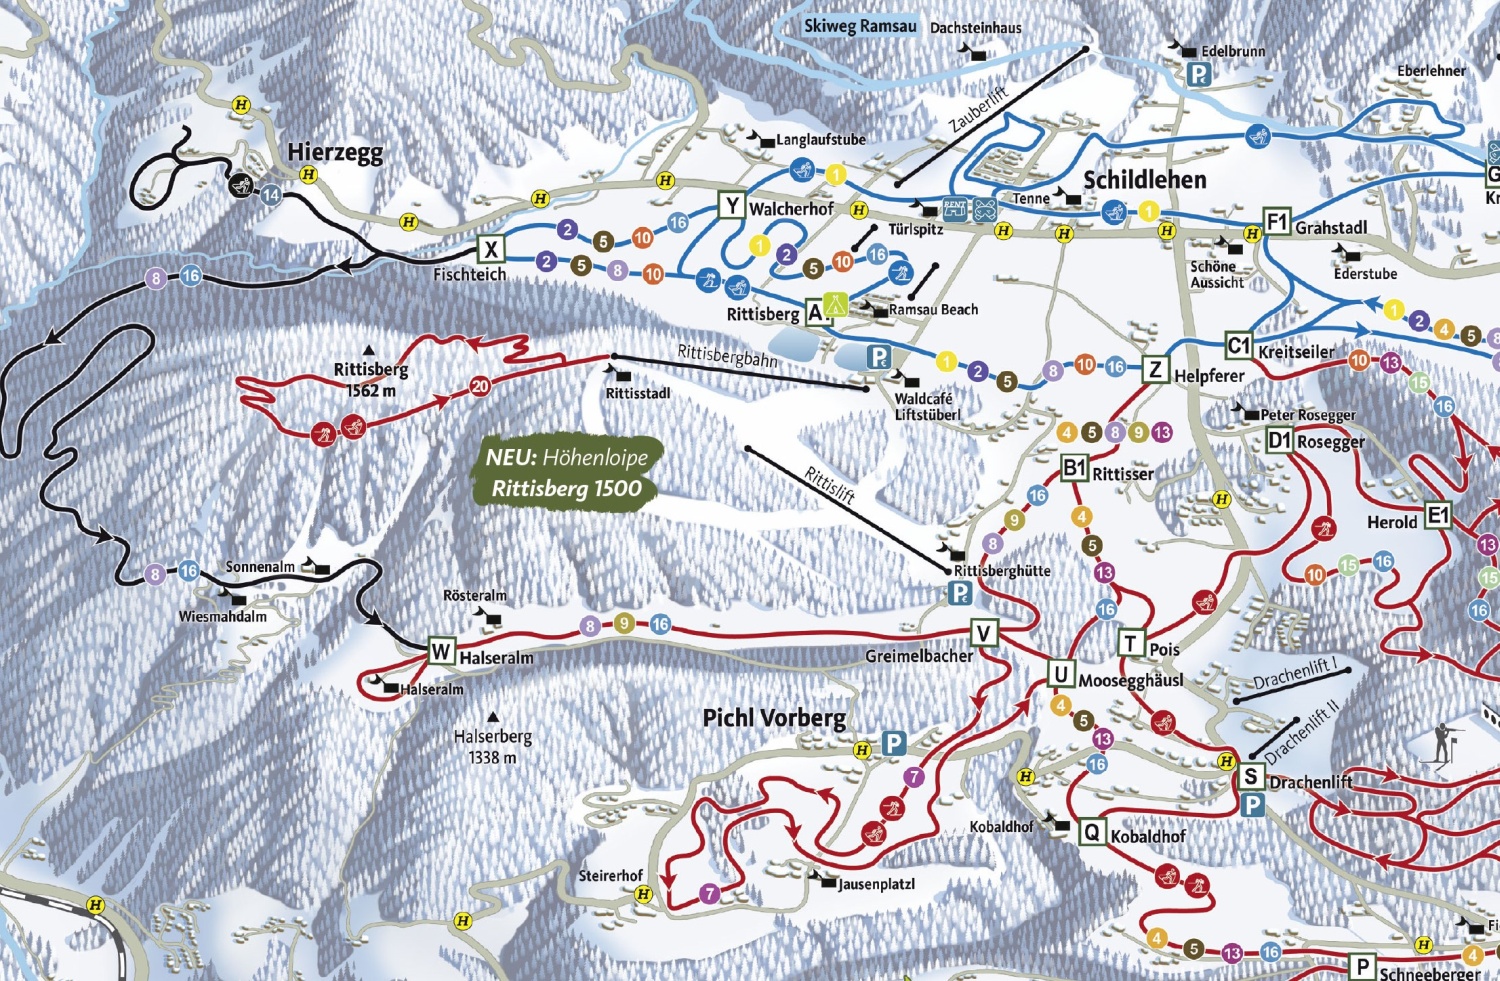 Az új sítérképen már jelölve van a Rittisberg 1500 sífutópálya